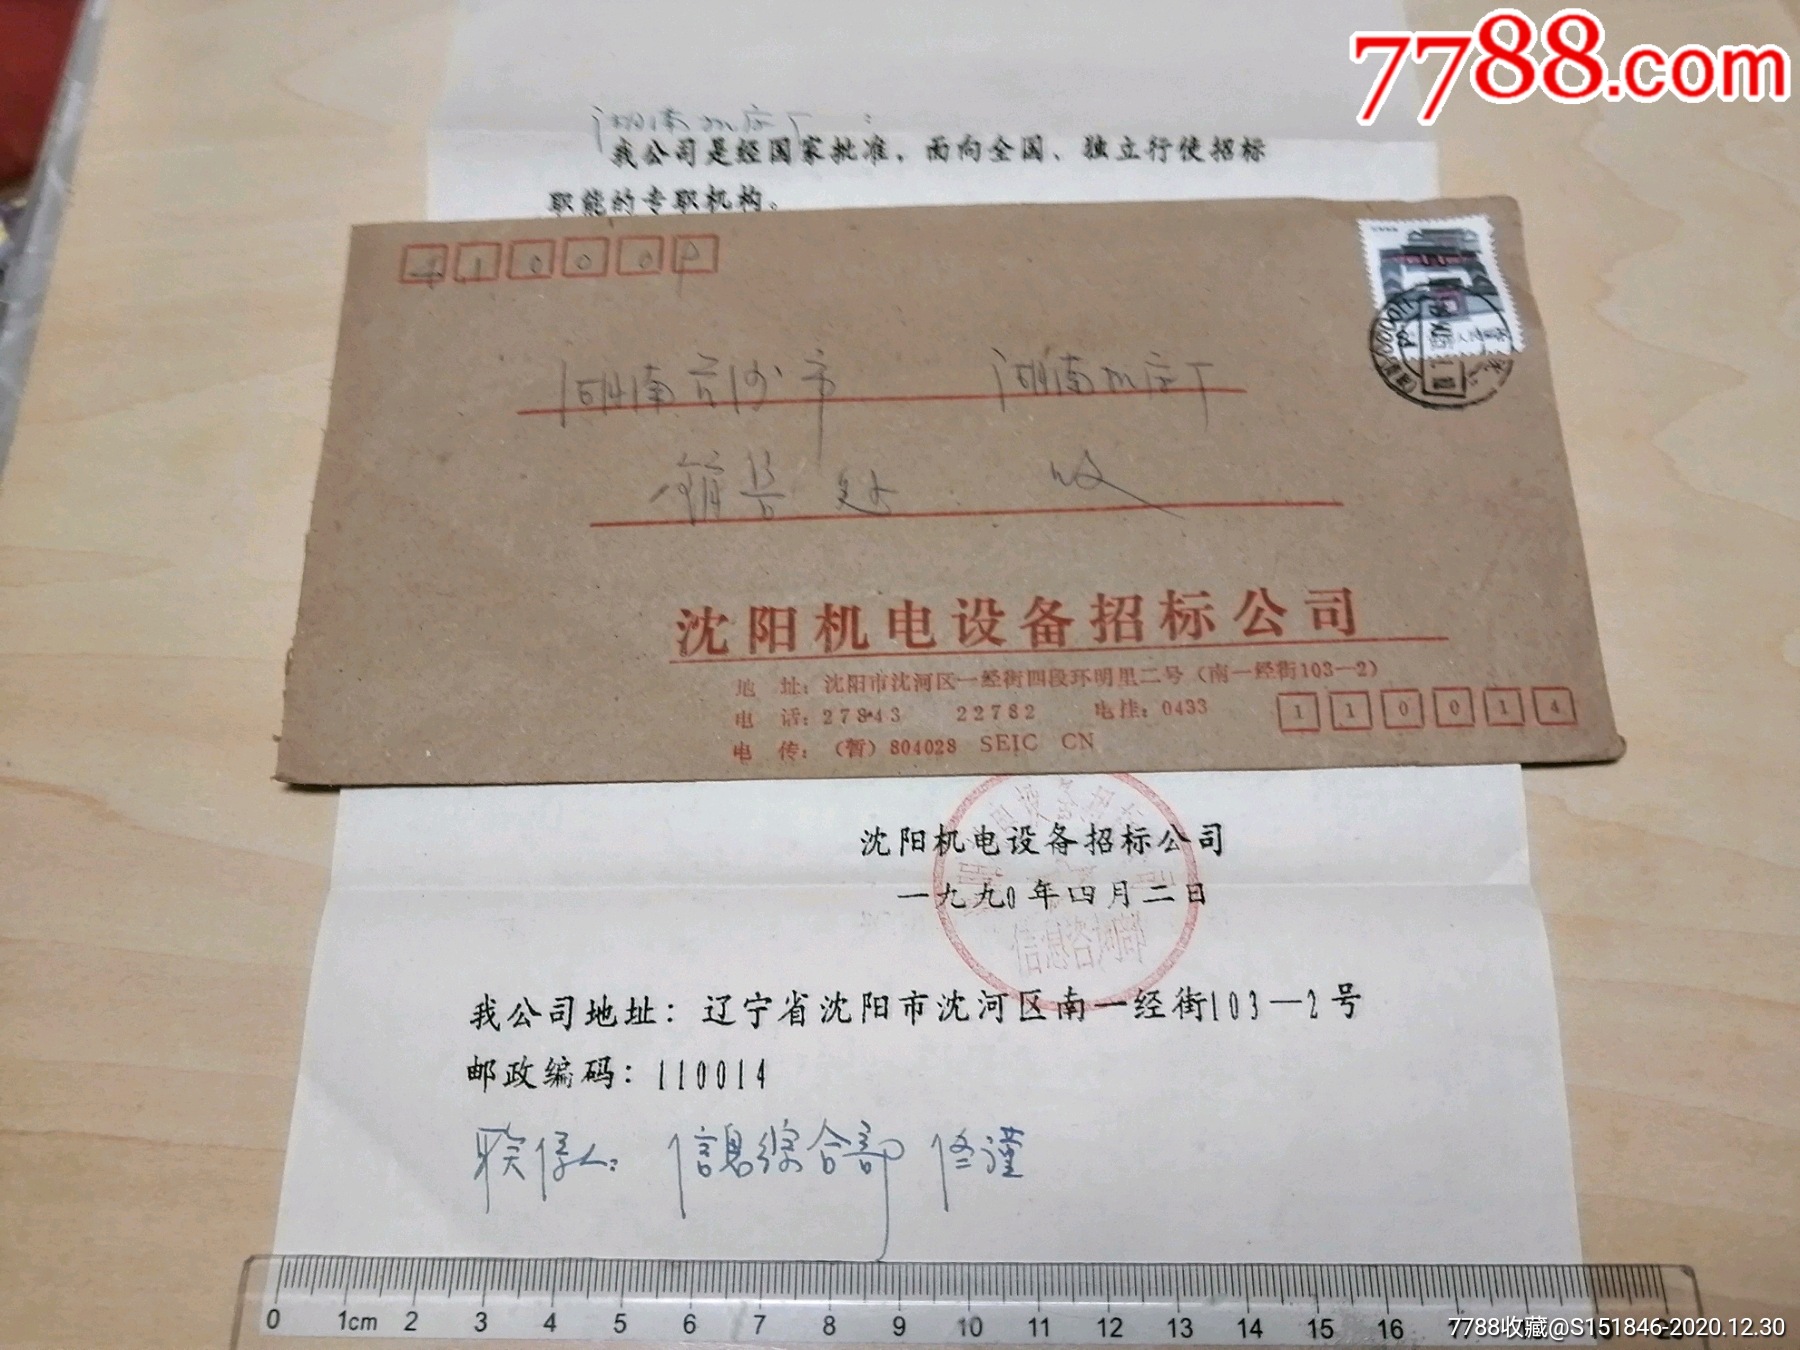 1990年沈阳机电设备招标公司寄长沙湖南机床厂公函实寄